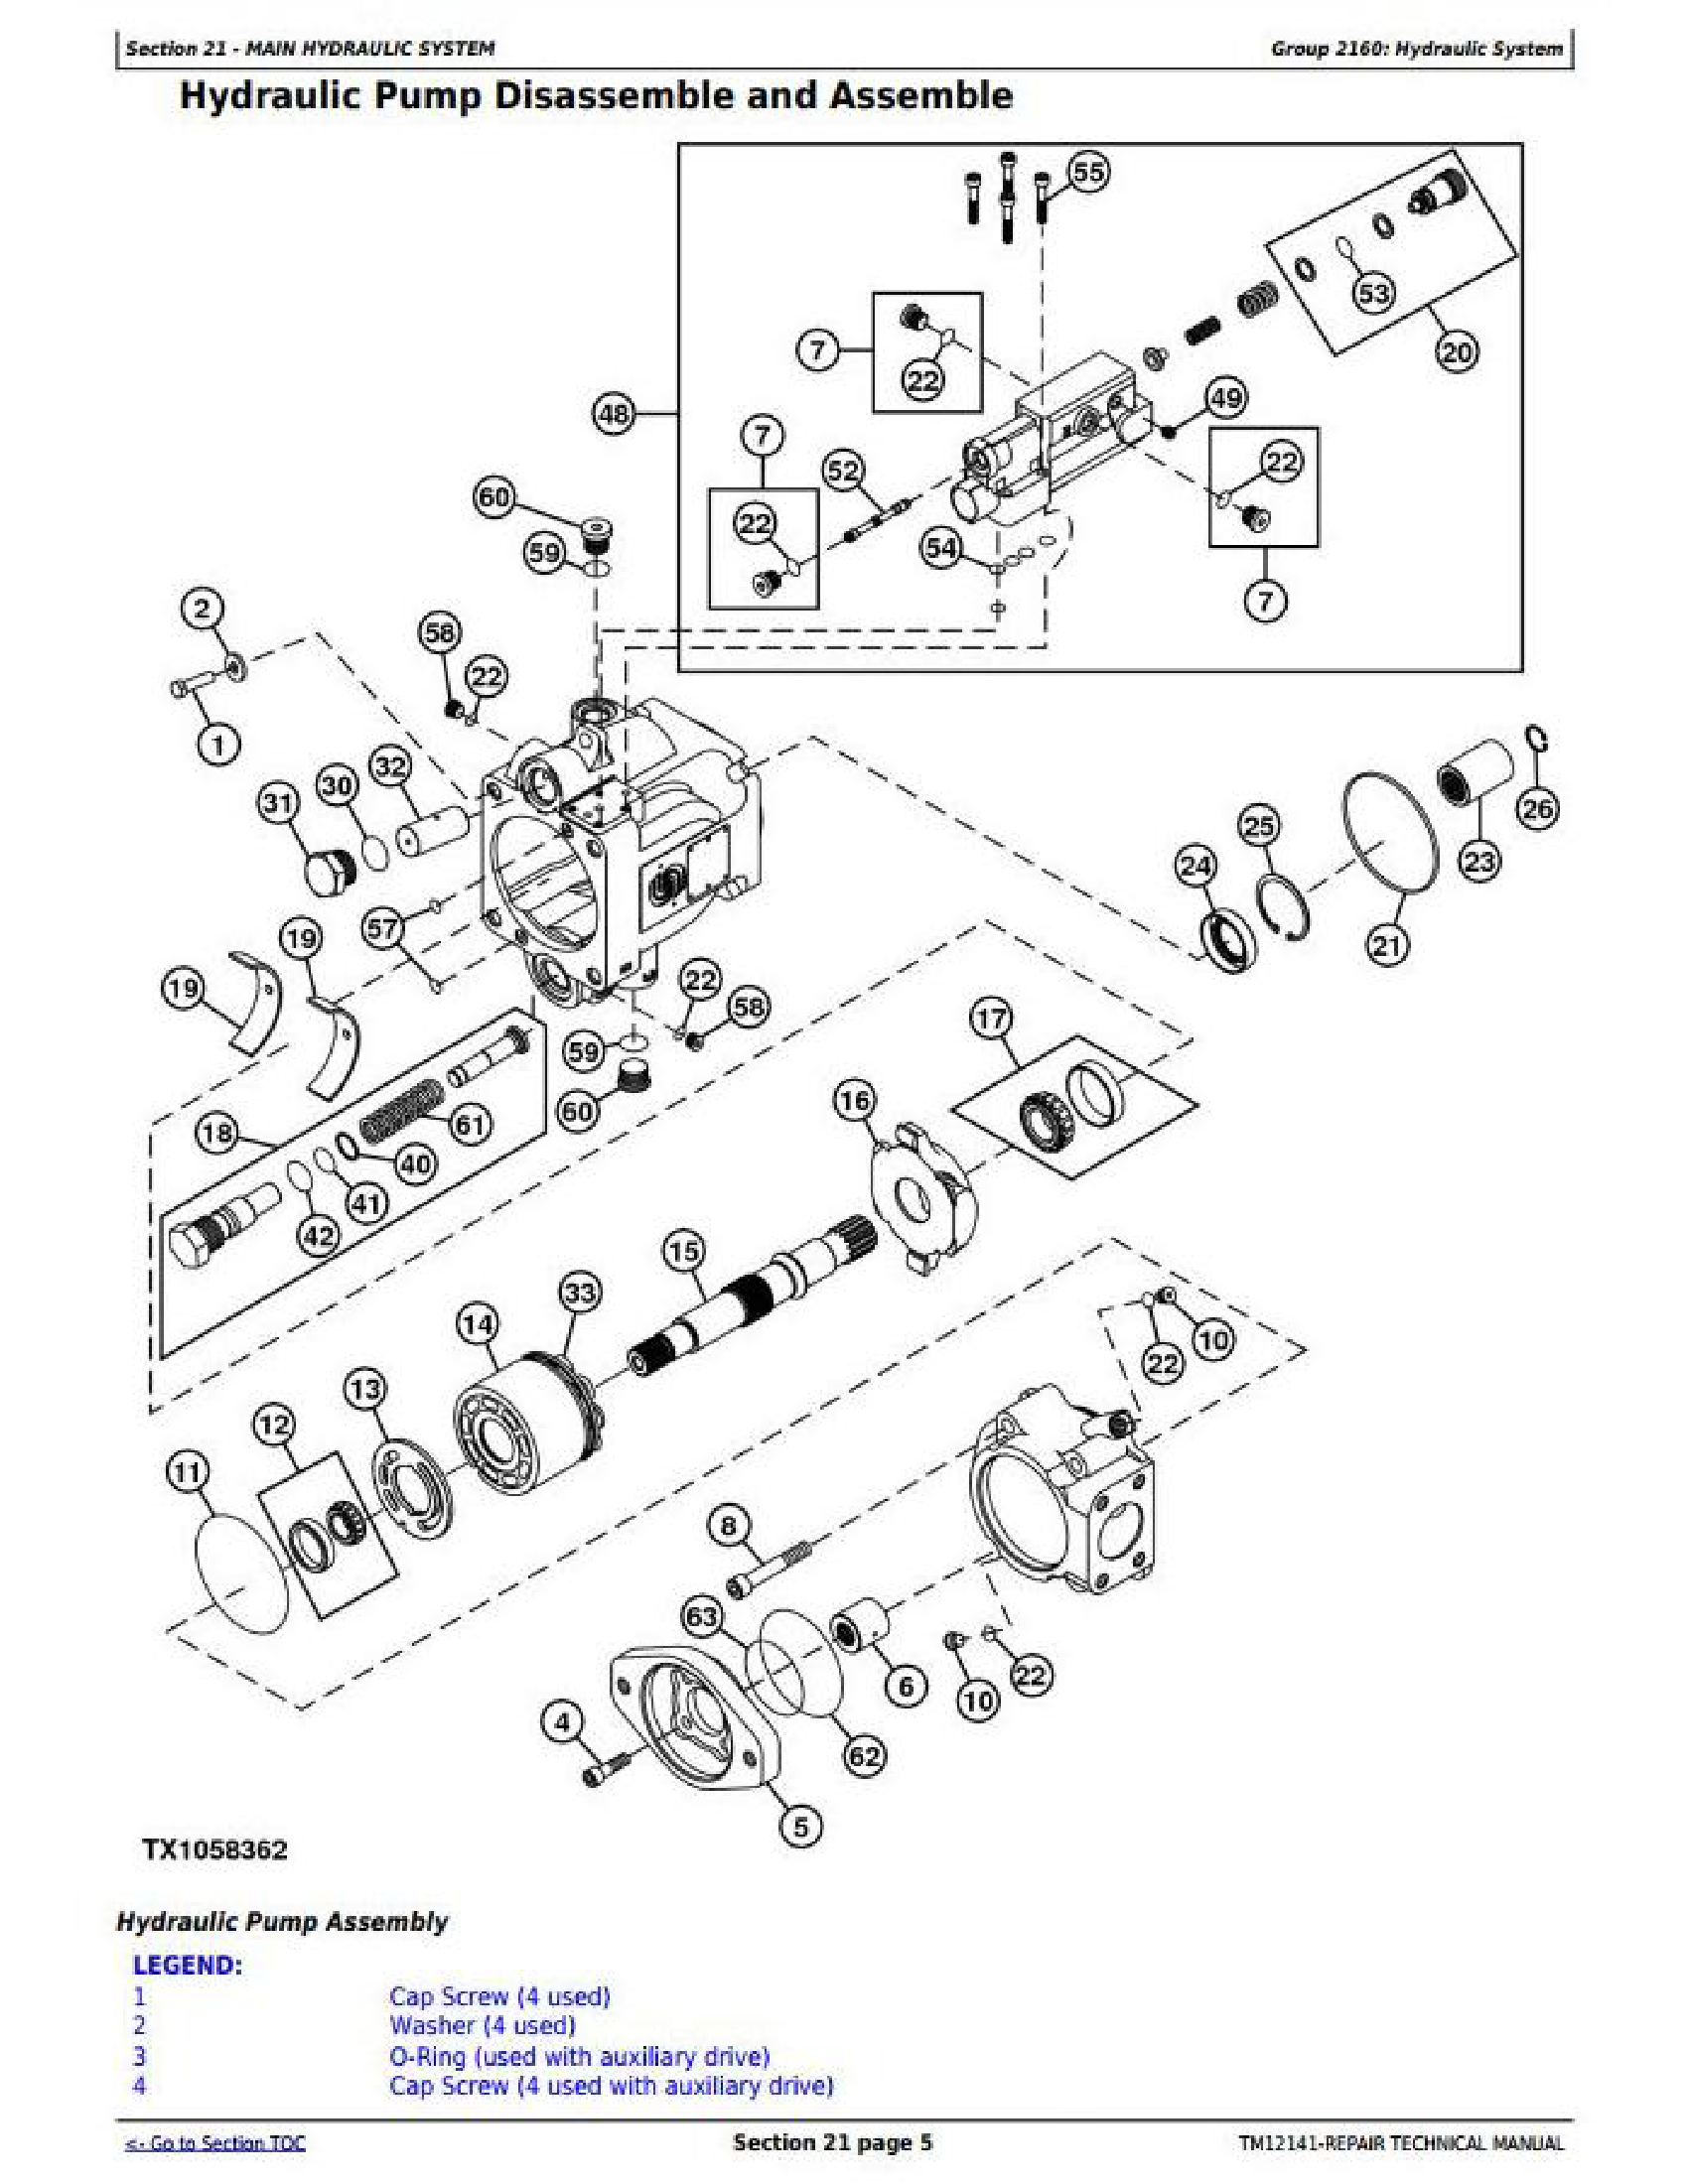 John Deere 326E manual pdf